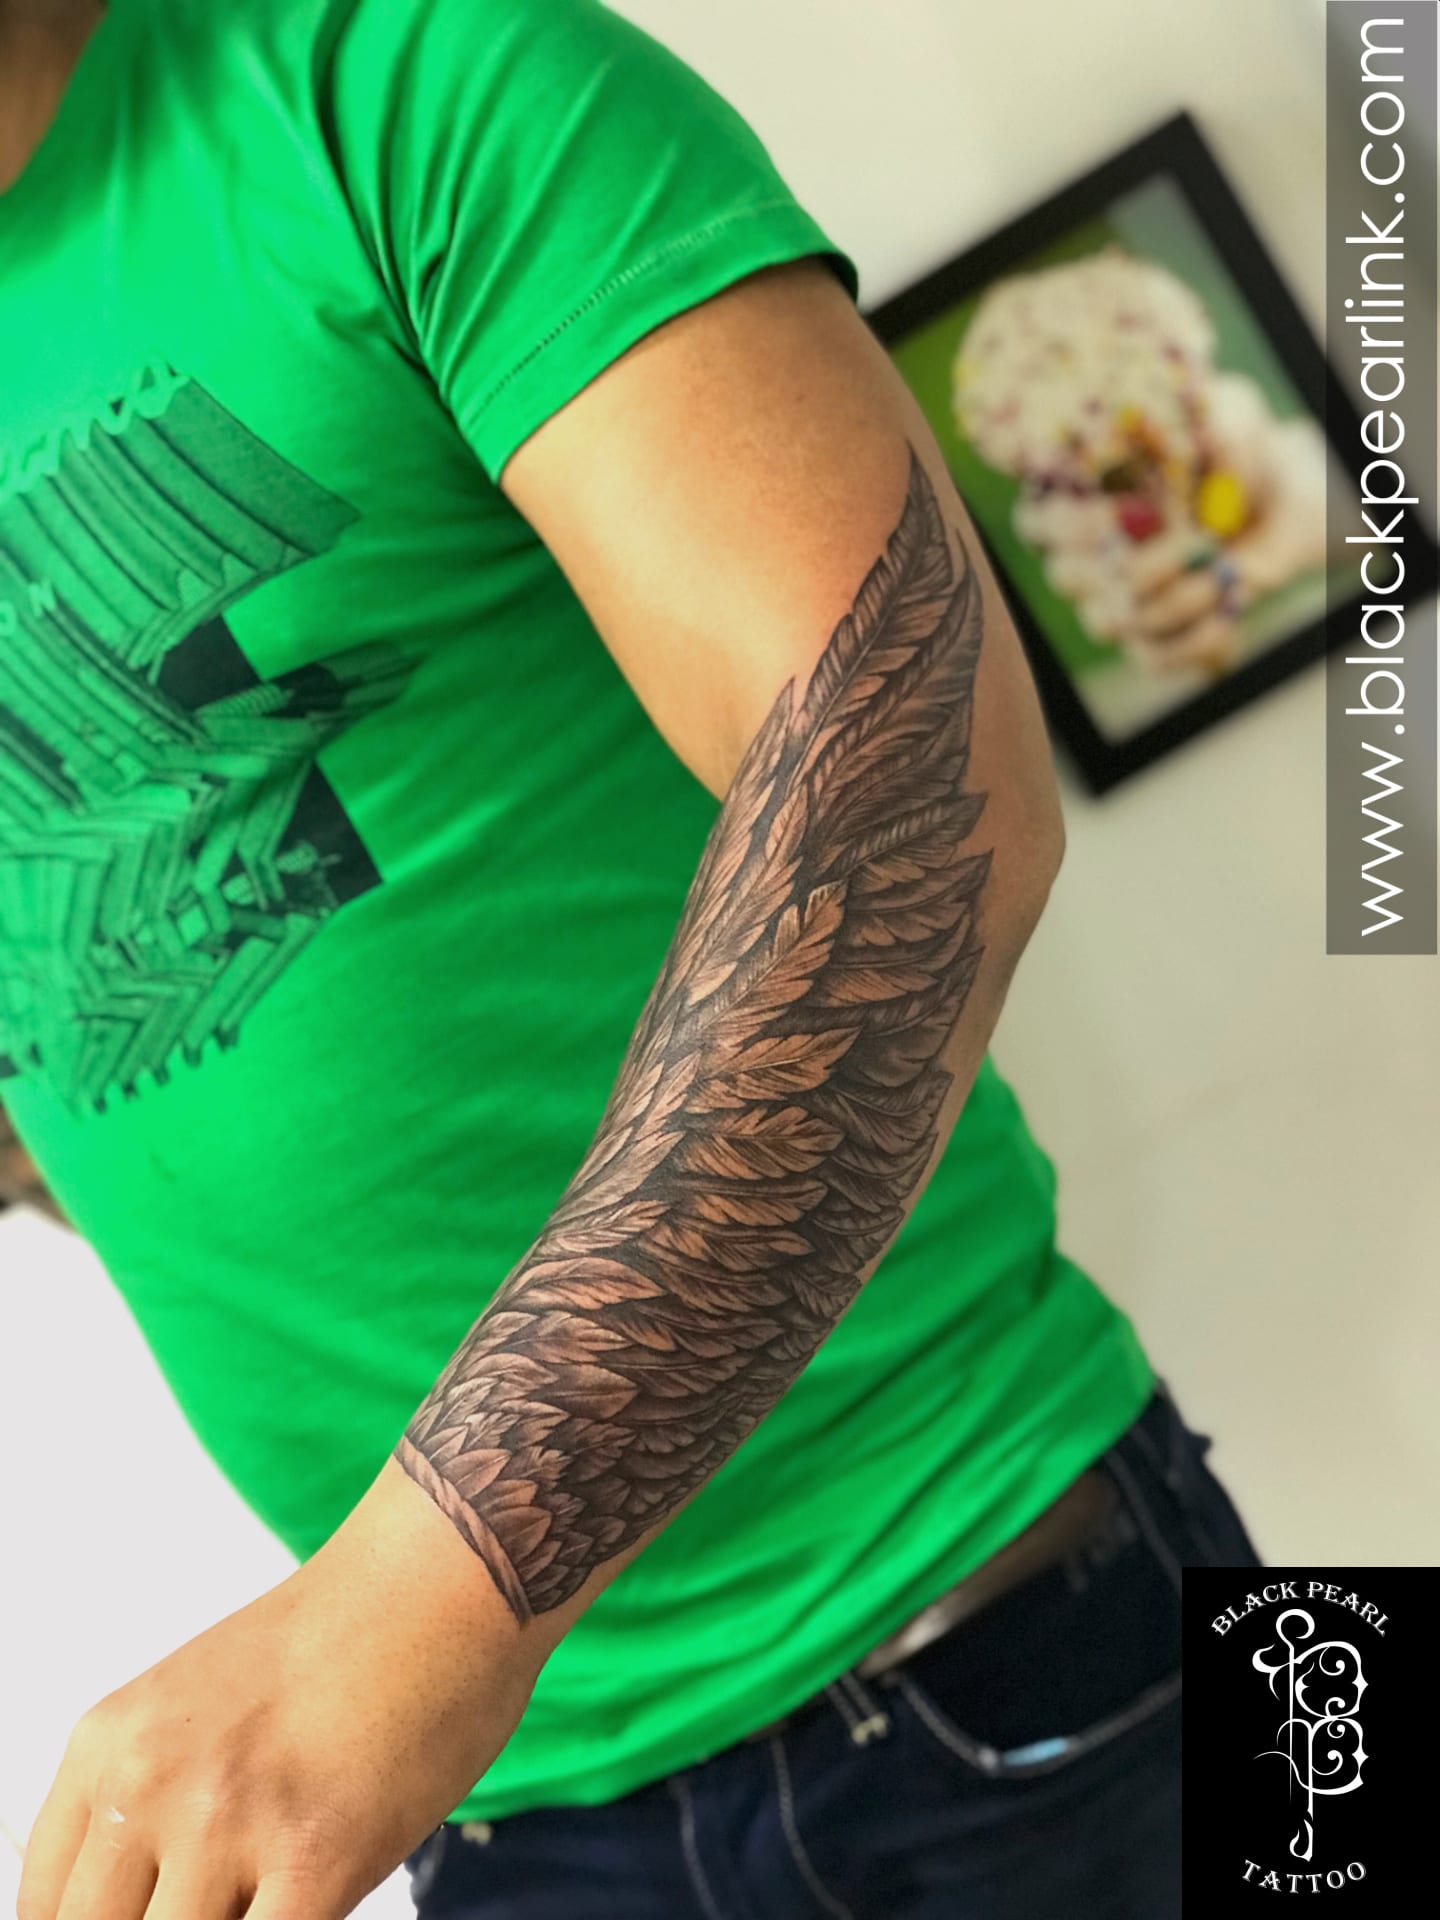 Simply Inked Angel Wings Semi-Permanent Tattoo Designer Semi-Permanent  Tattoo for Girls Boys Men Women waterproof Sticker Size: 2.5 x 4 inch l  Black l 2g : Amazon.in: Beauty